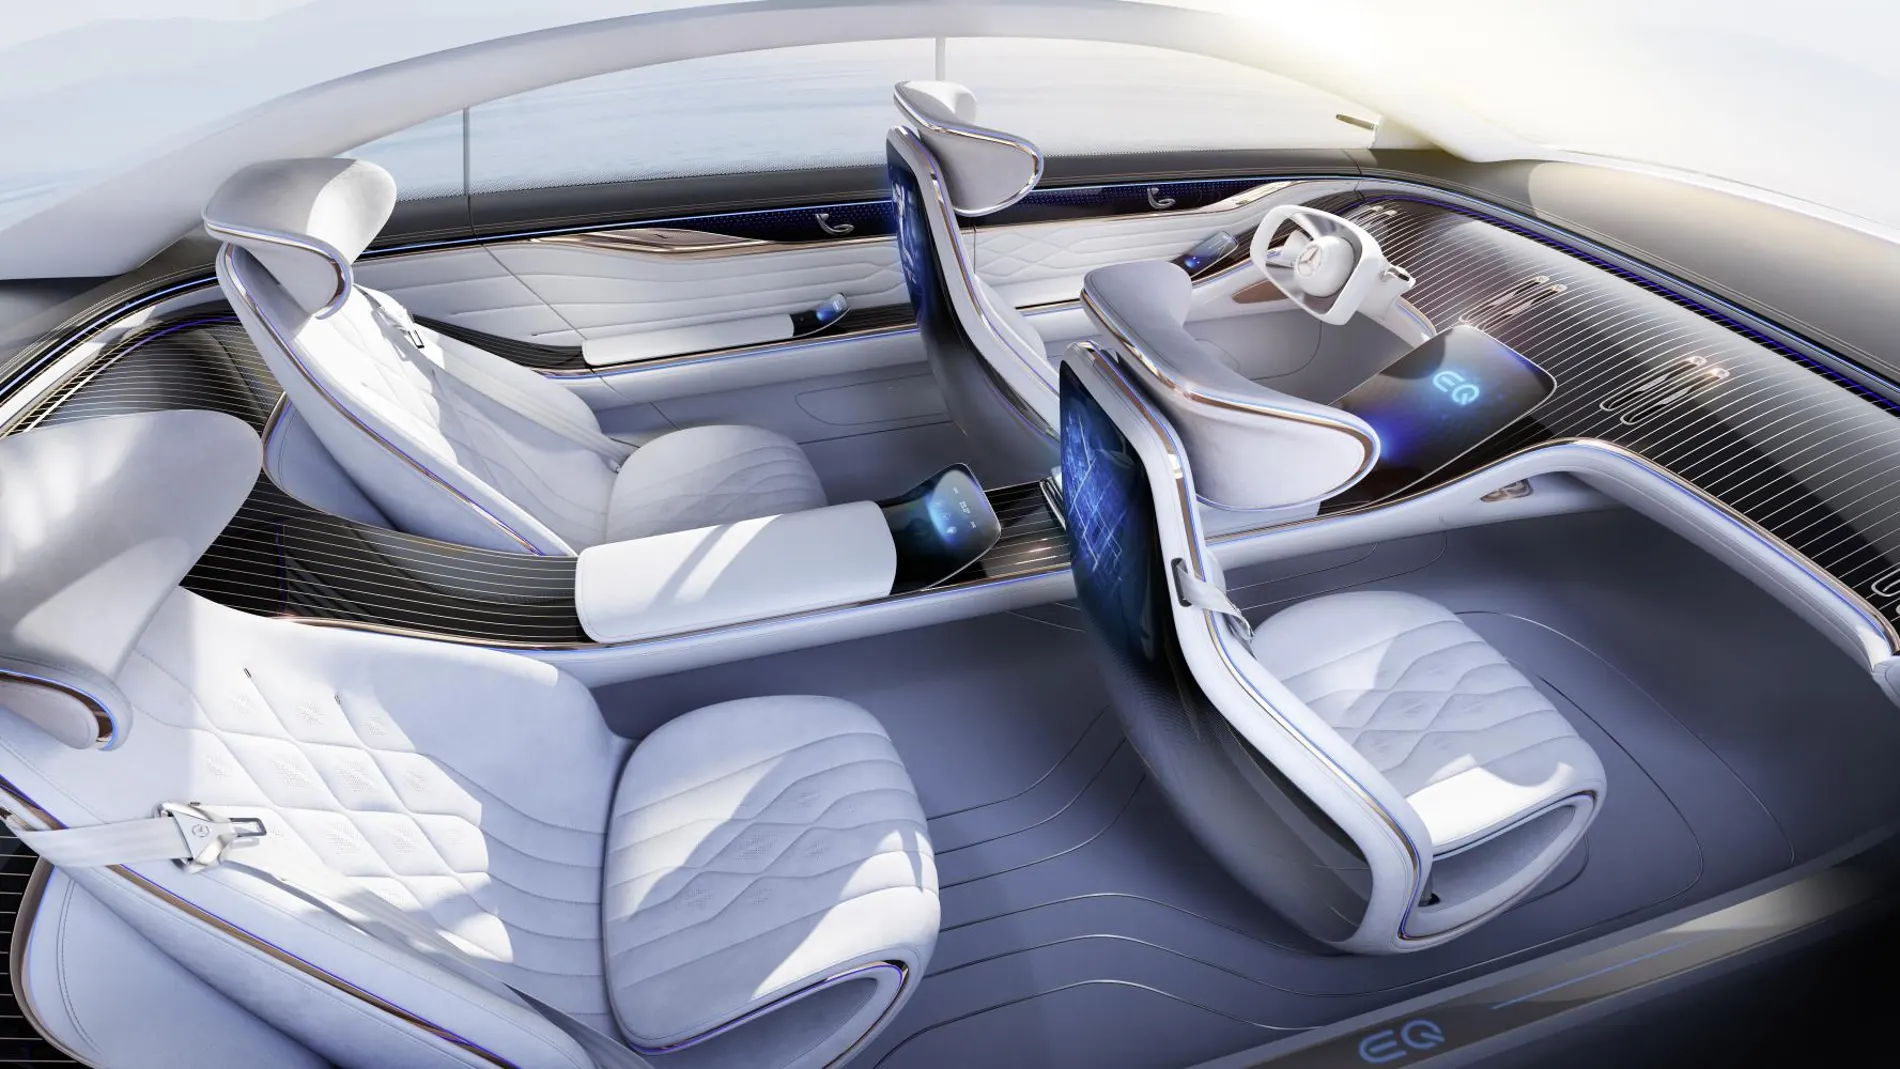 ¿Cómo serán los interiores de los coches en el futuro?